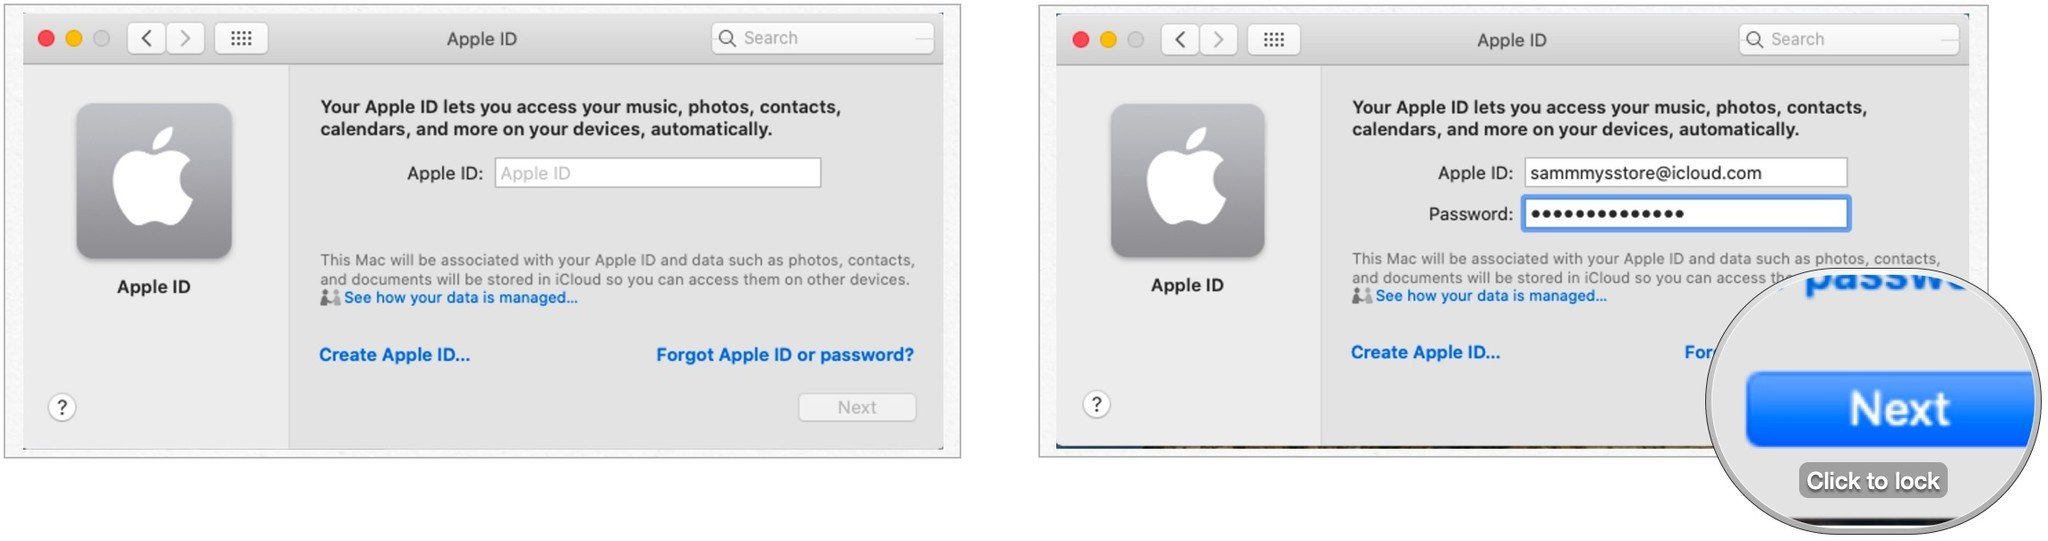 Pour configurer iCloud sur Mac, saisissez votre identifiant Apple et votre mot de passe, puis sélectionnez Suivant.